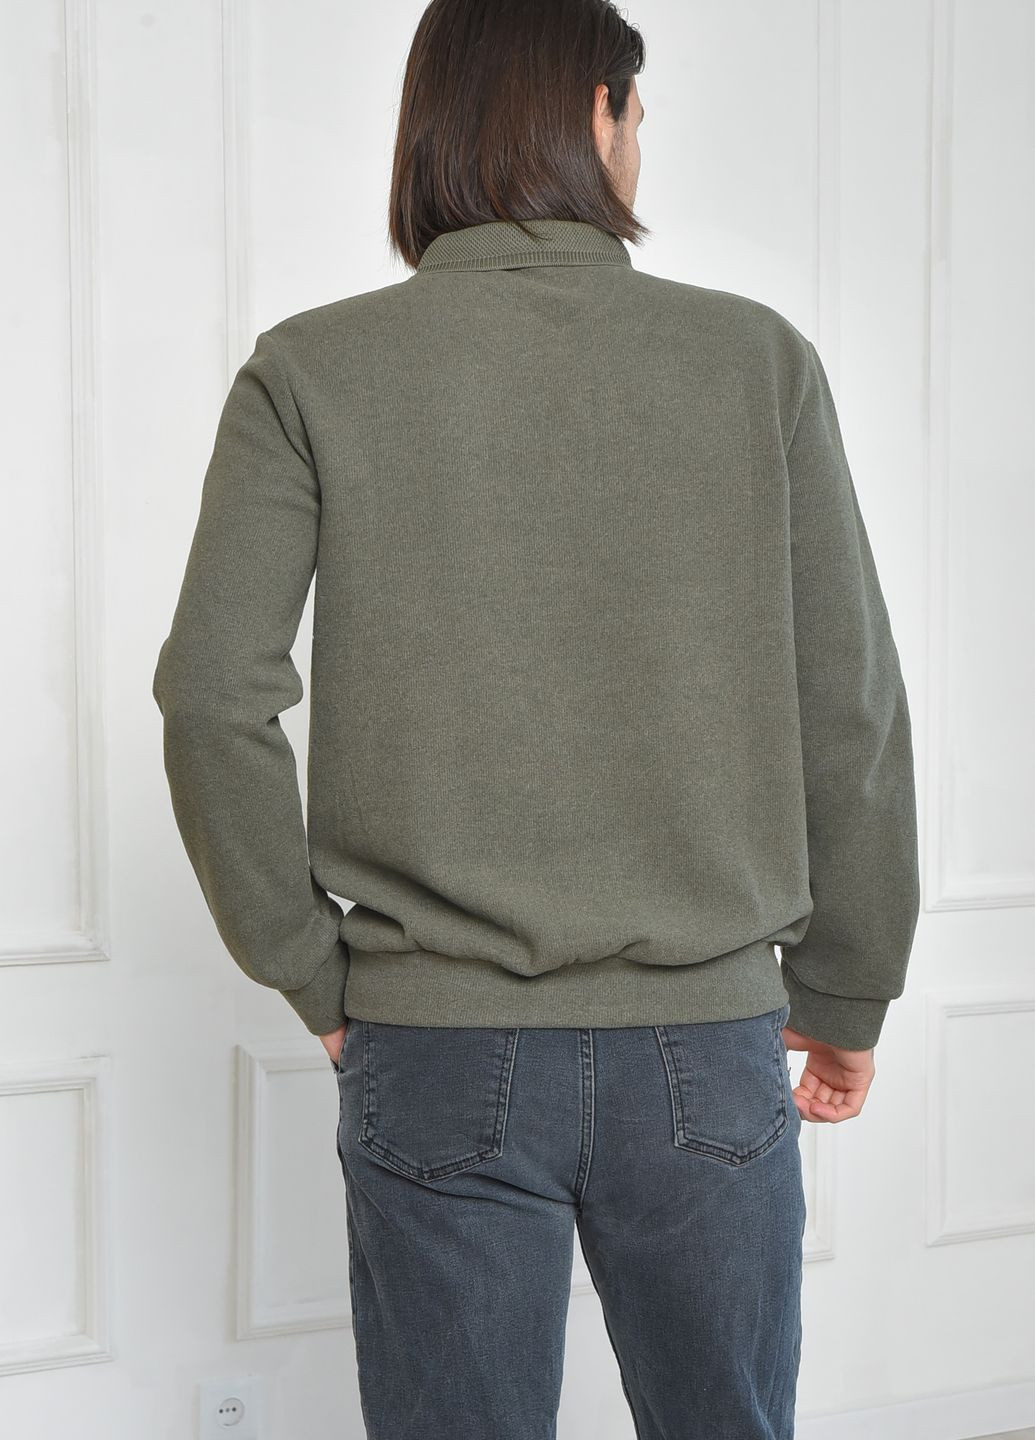 Оливковый (хаки) зимний свитер мужской цвета хаки пуловер Let's Shop